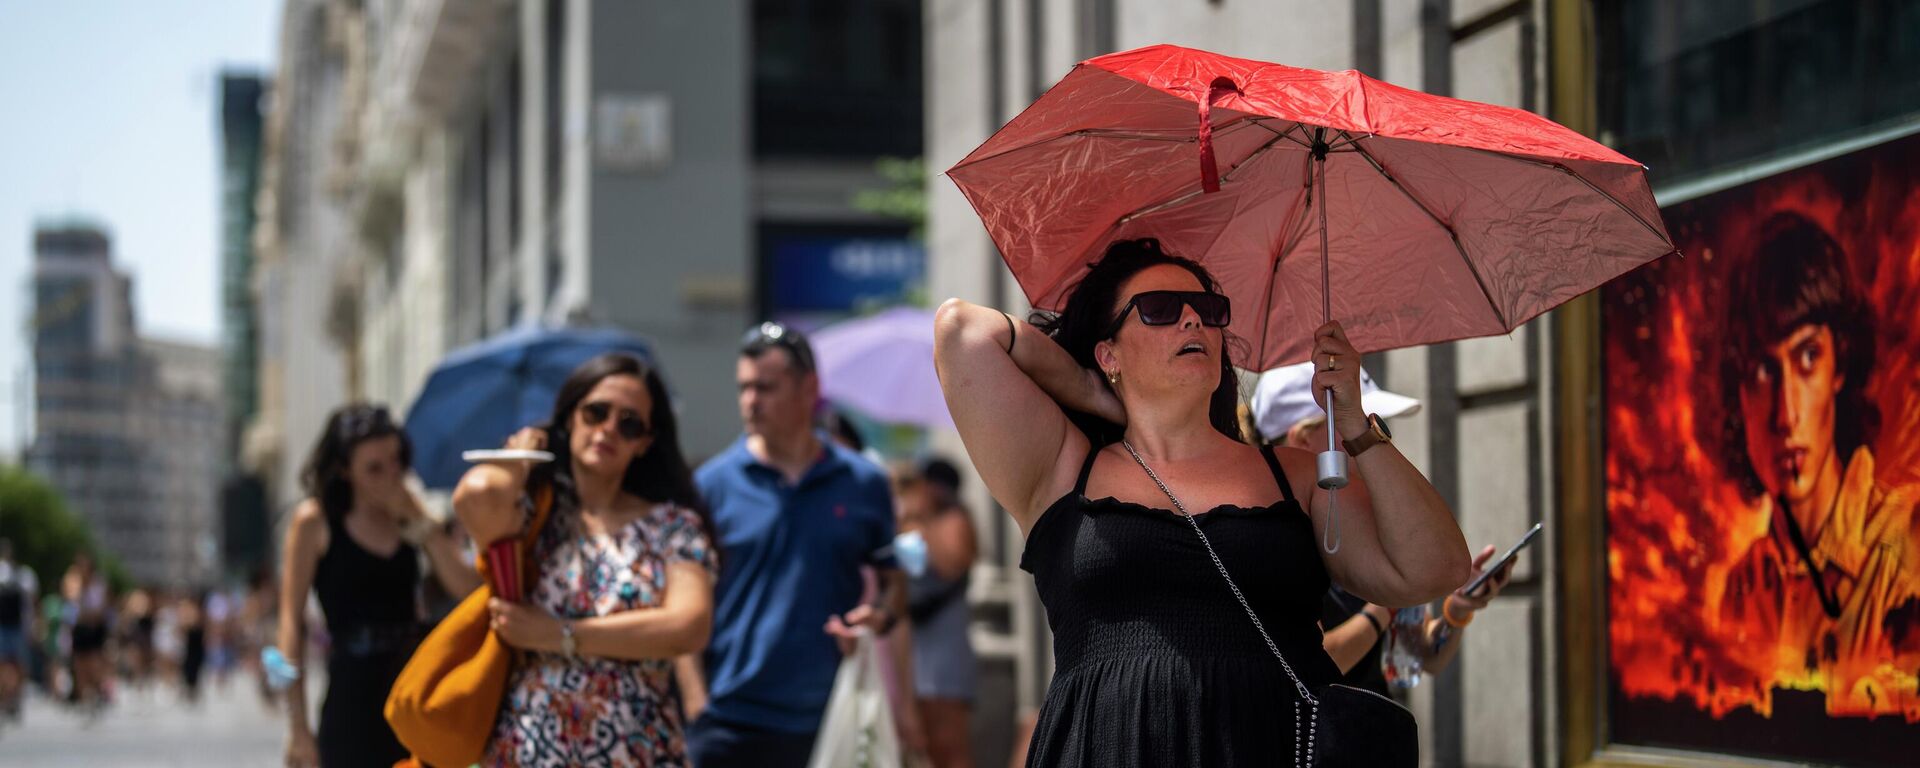 امرأة تحمل مظلة للاحتماء من أشعة الشمس خلال يوم مشمس حار في مدريد، إسبانيا، 18 يوليو 2022. - سبوتنيك عربي, 1920, 19.07.2022